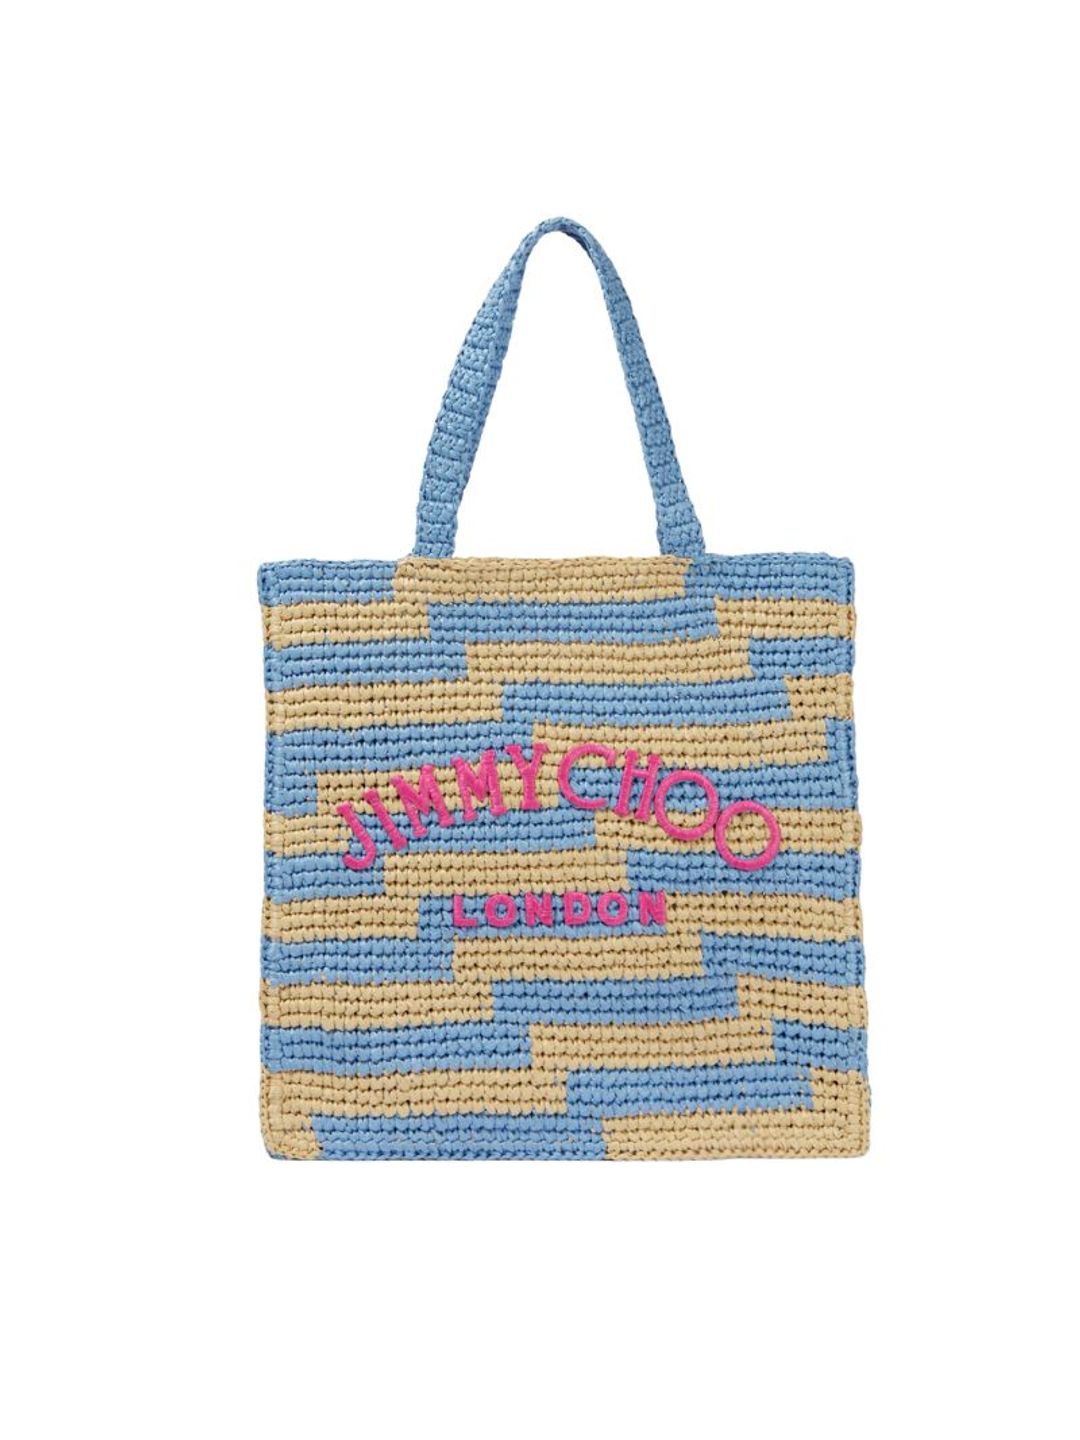 Jimmy Choo blue and pink beach bag 